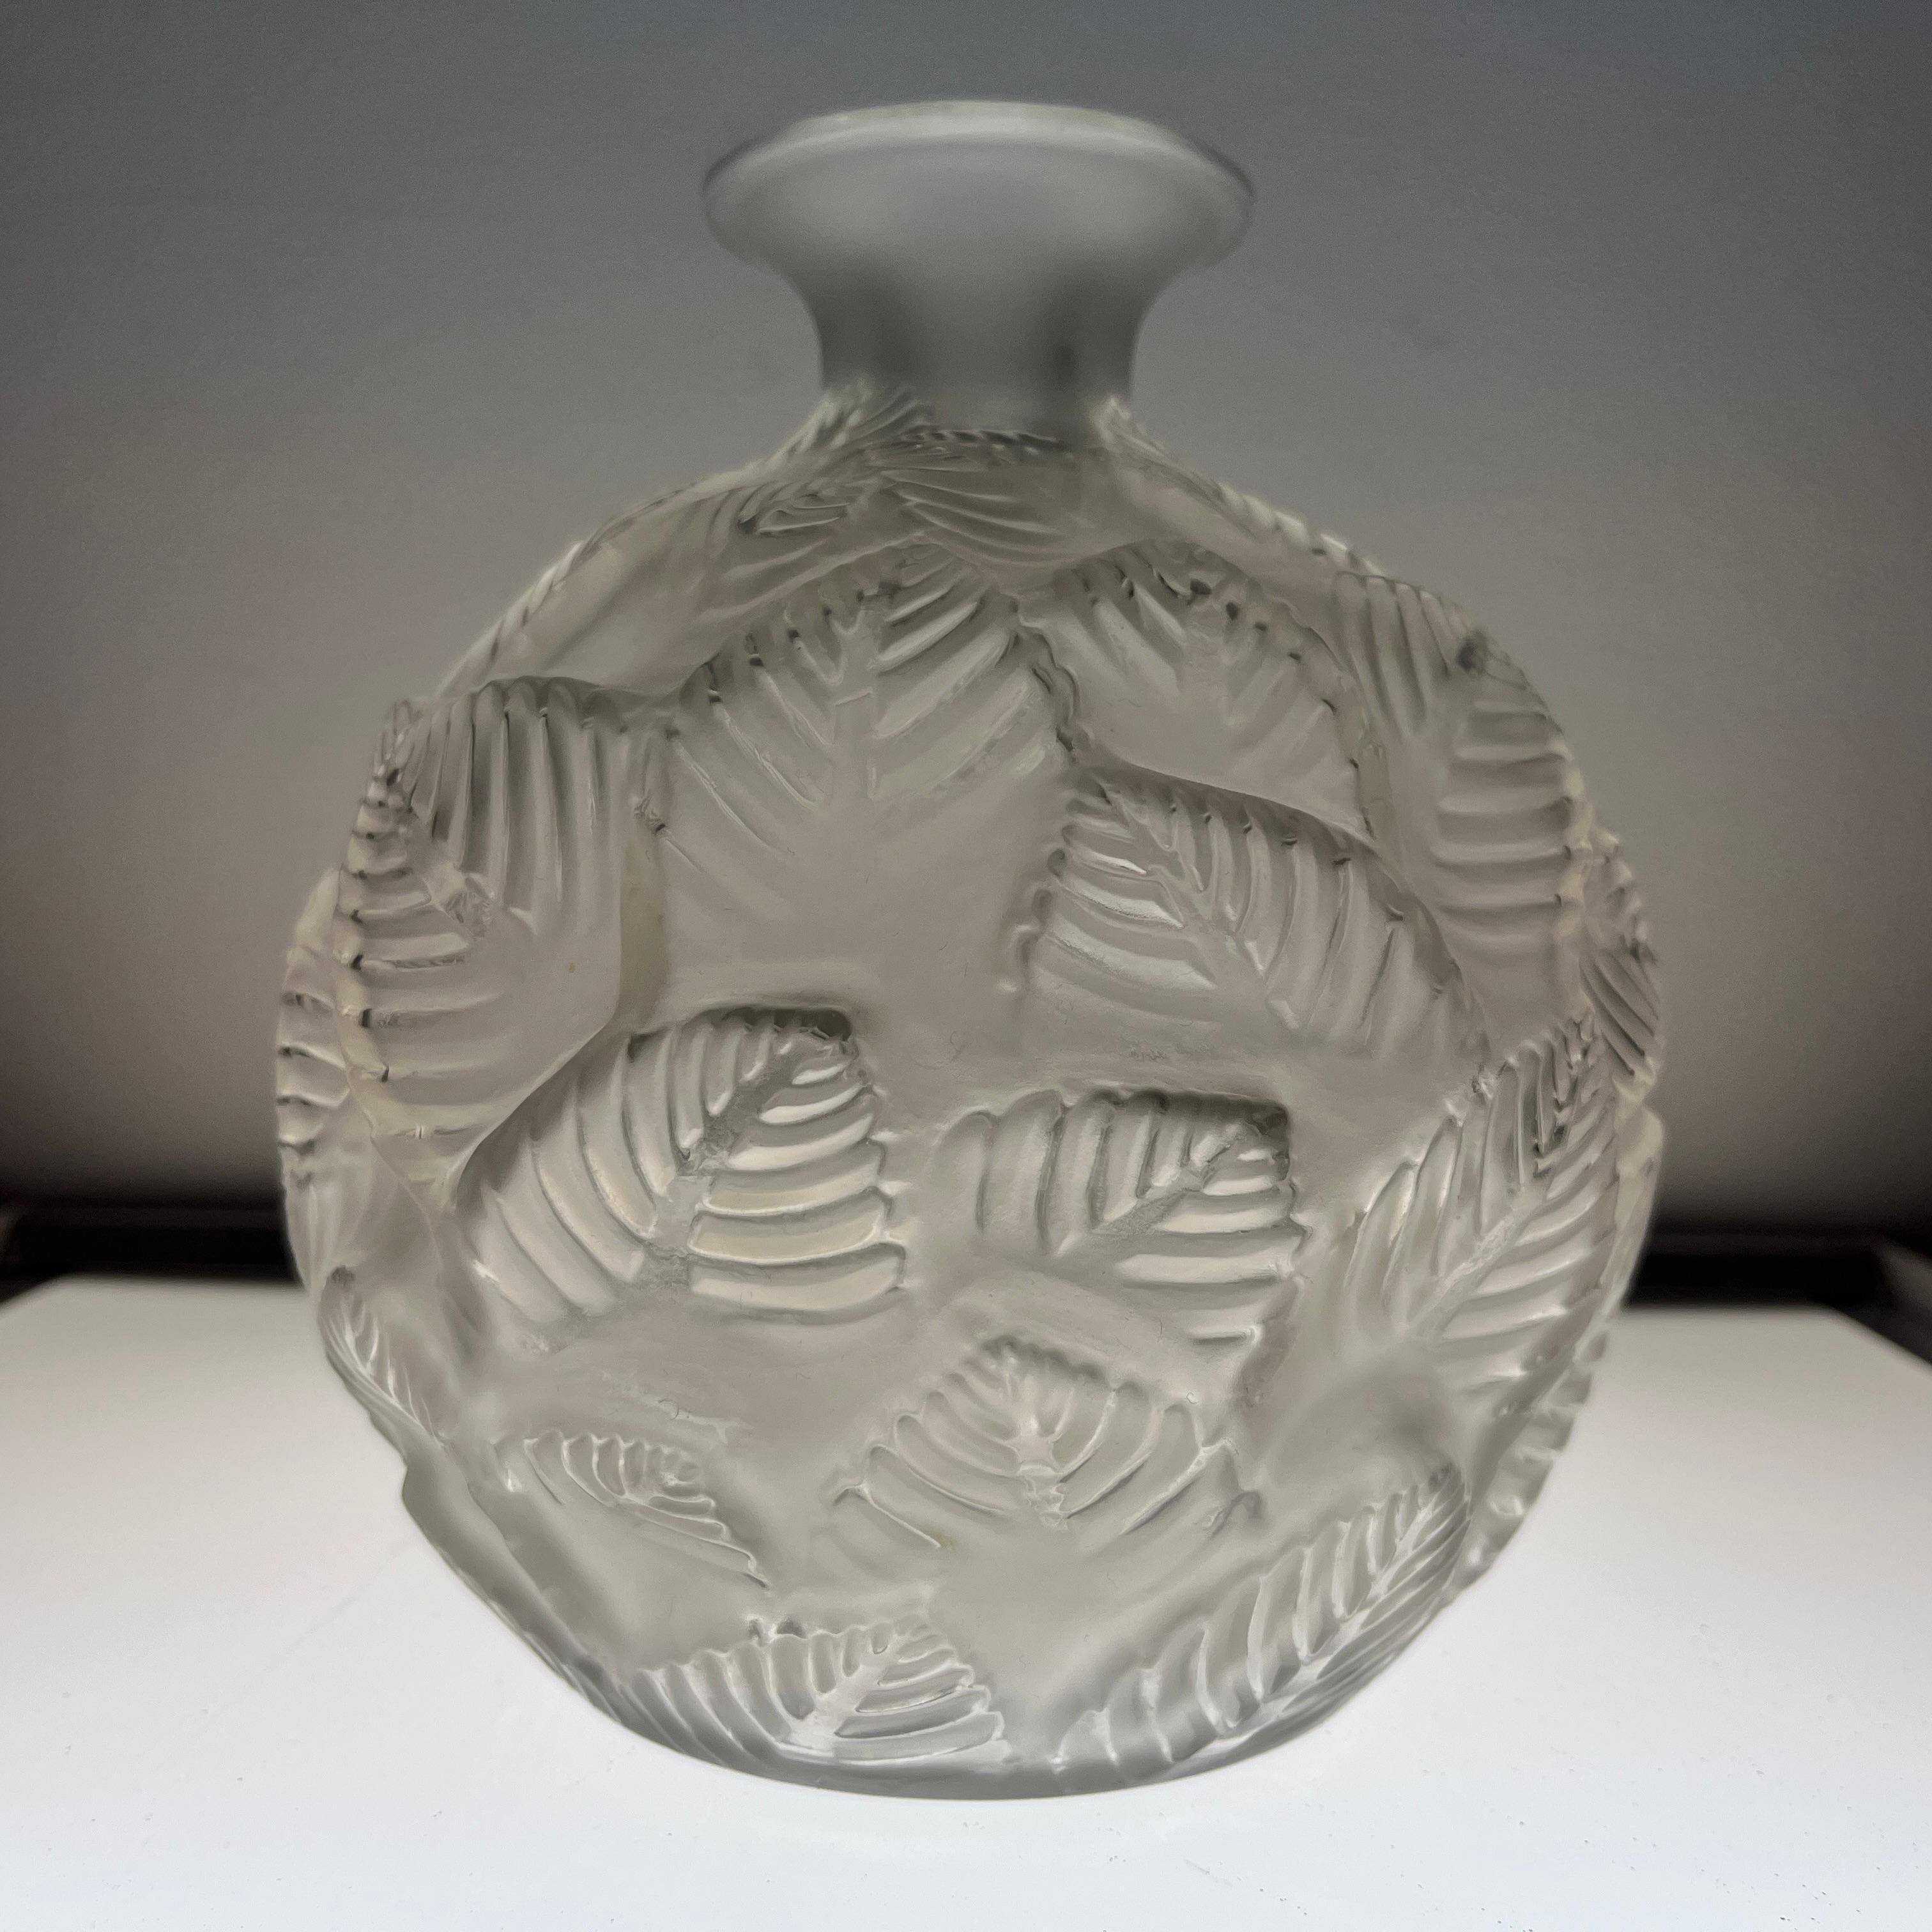 Description : 
Vase « Ormeaux » de Rene Lalique. Modele dessiné en 1926. Signature manuscrite au cul de piece. 

Dimensions : 
Hauteur  : 16,5 cms
Diamètre : 15 cms

Etat : 
Bel état d’usage. Quelques minuscules egrenures au col, dans le décor et